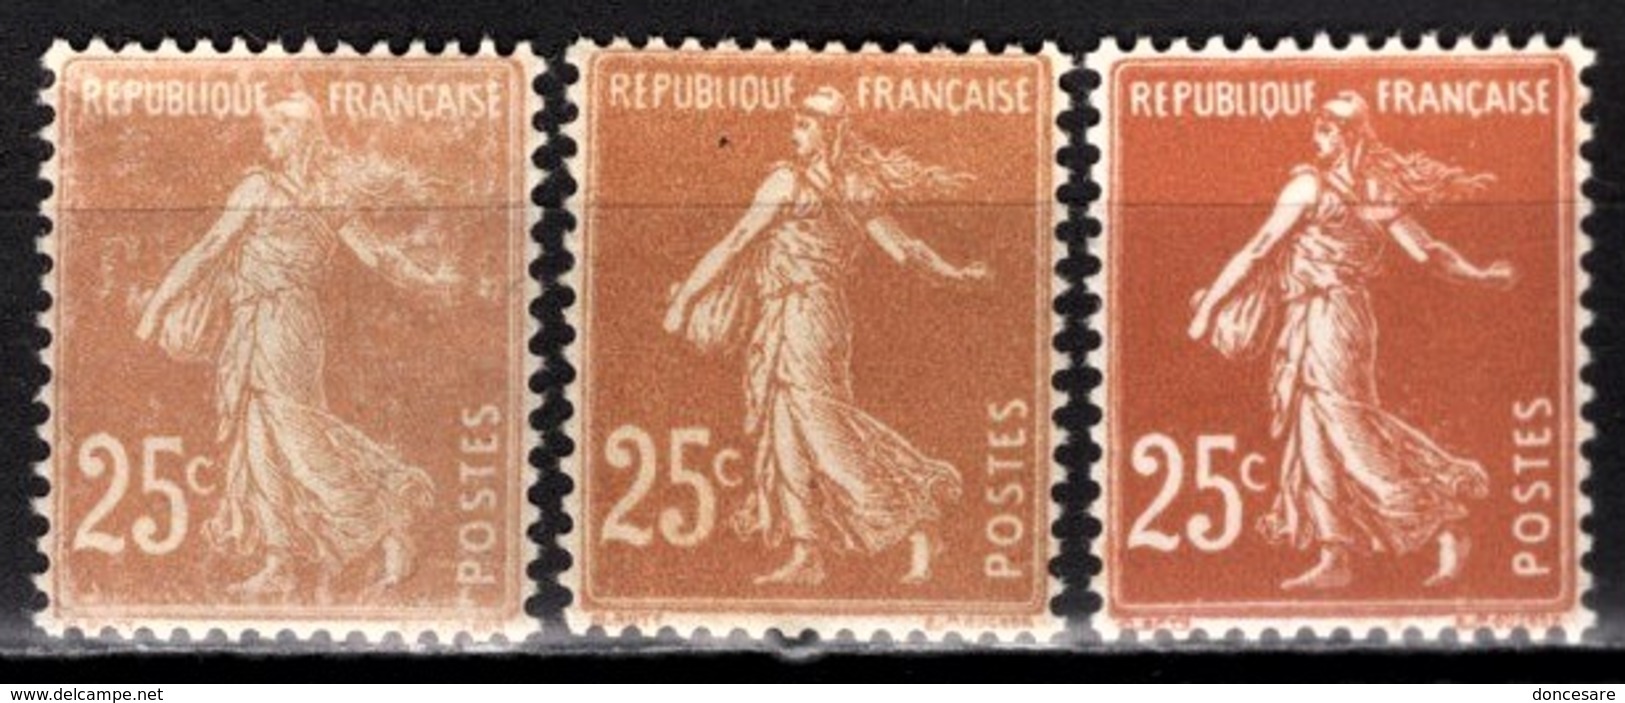 FRANCE 1926 / 1927 - Y.T. N° 235 X 3 NUANCES - NEUFS** - Neufs